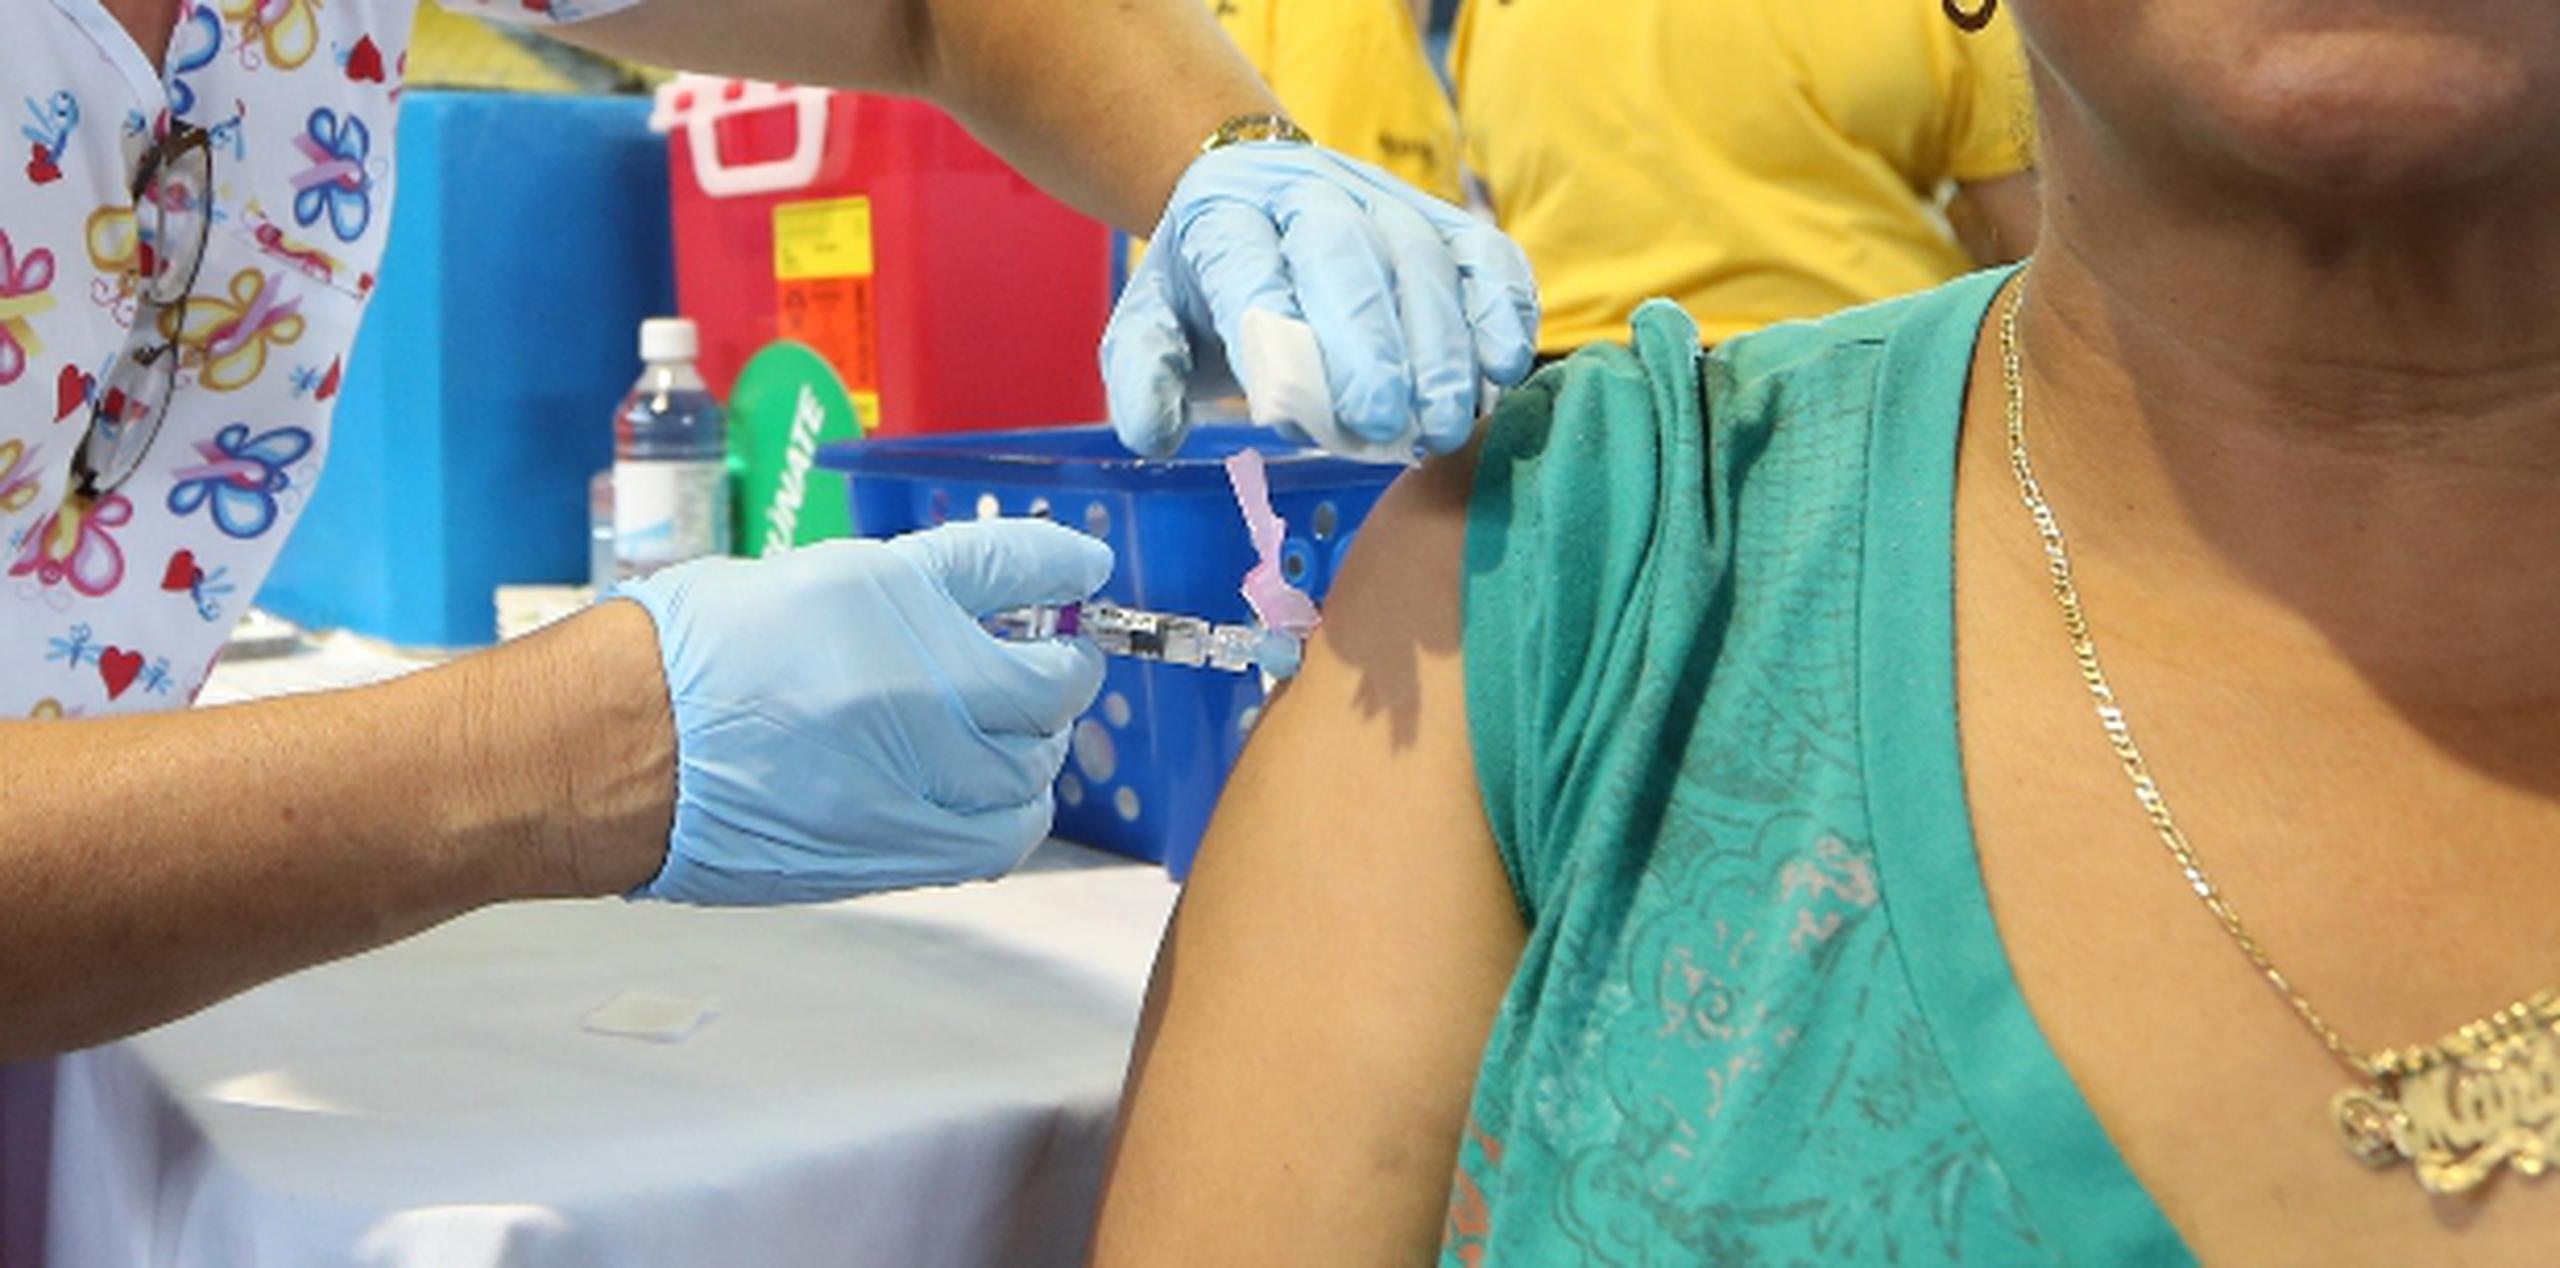 Las regiones de Salud con tasas más altas de contagio son Bayamón y la zona metro de San Juan. El  umbral de enfermedades gripales se extiende por 13 municipios. (Archivo)